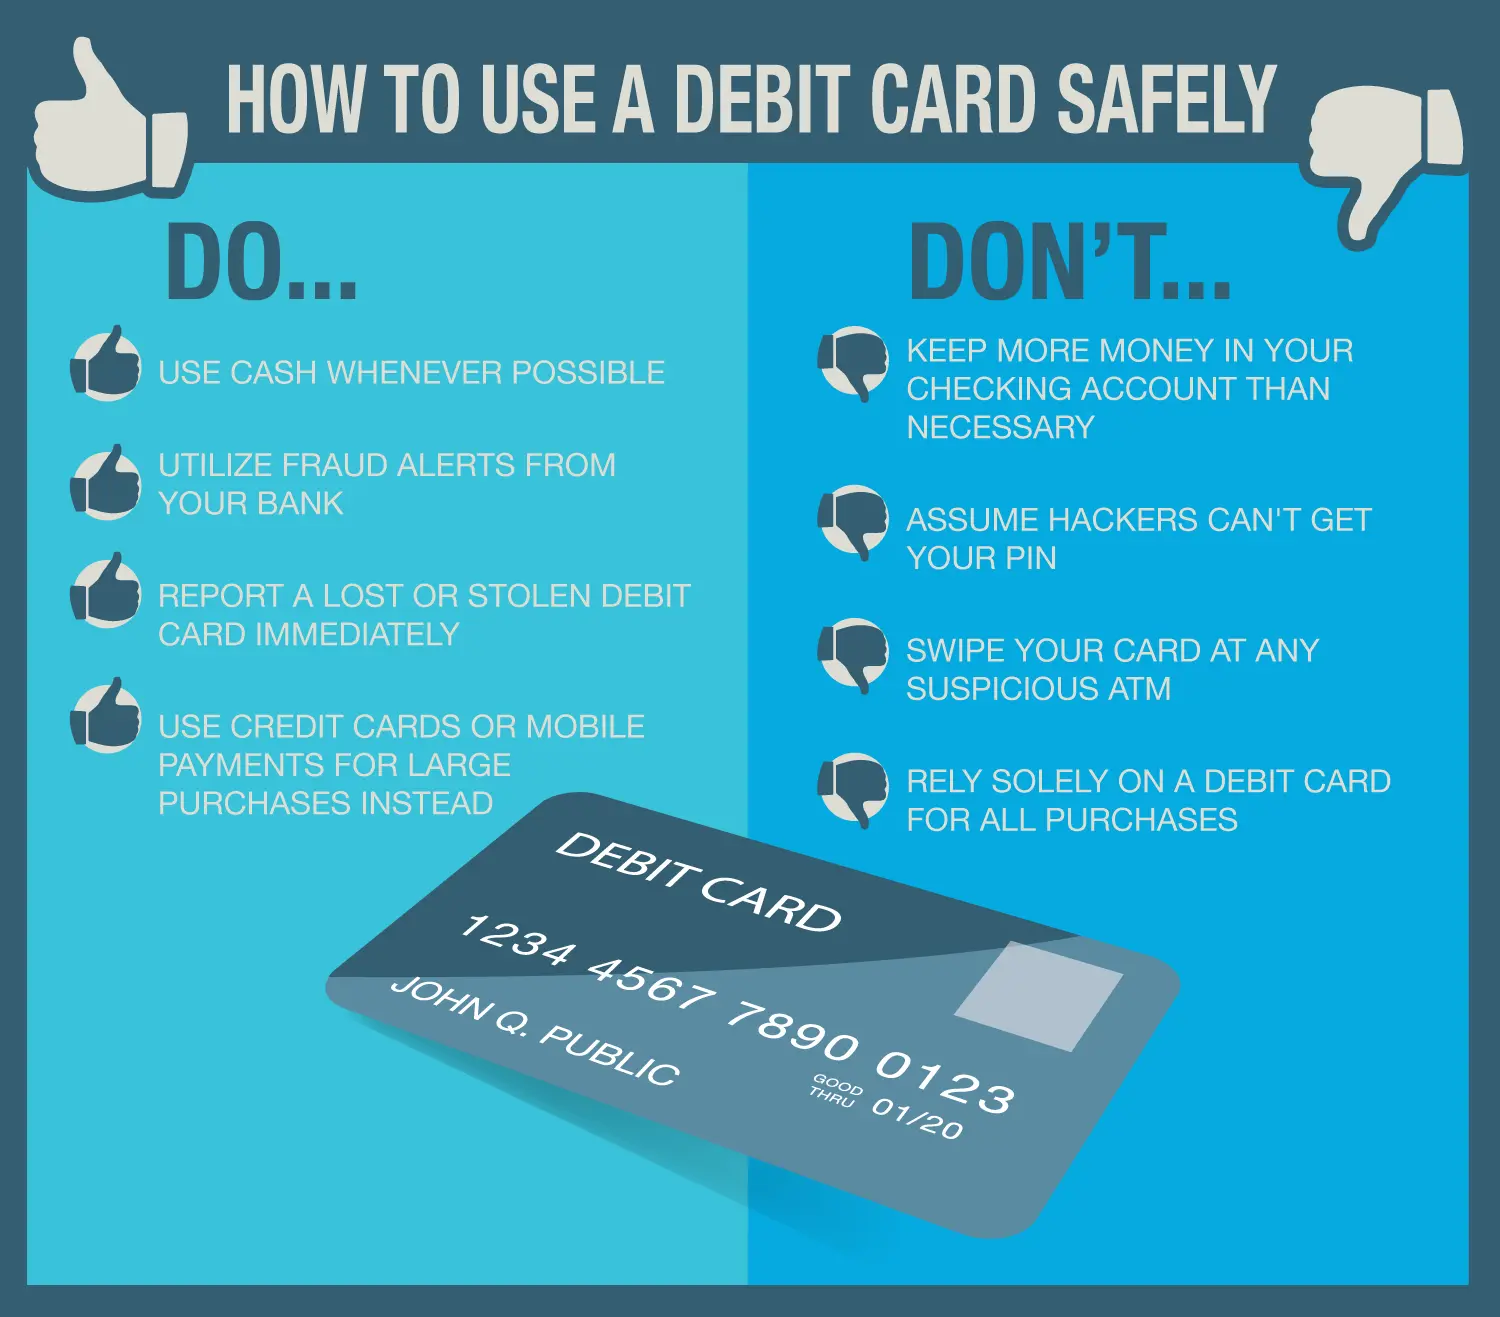 ¿Debo mantener mi tarjeta de débito en mi billetera?